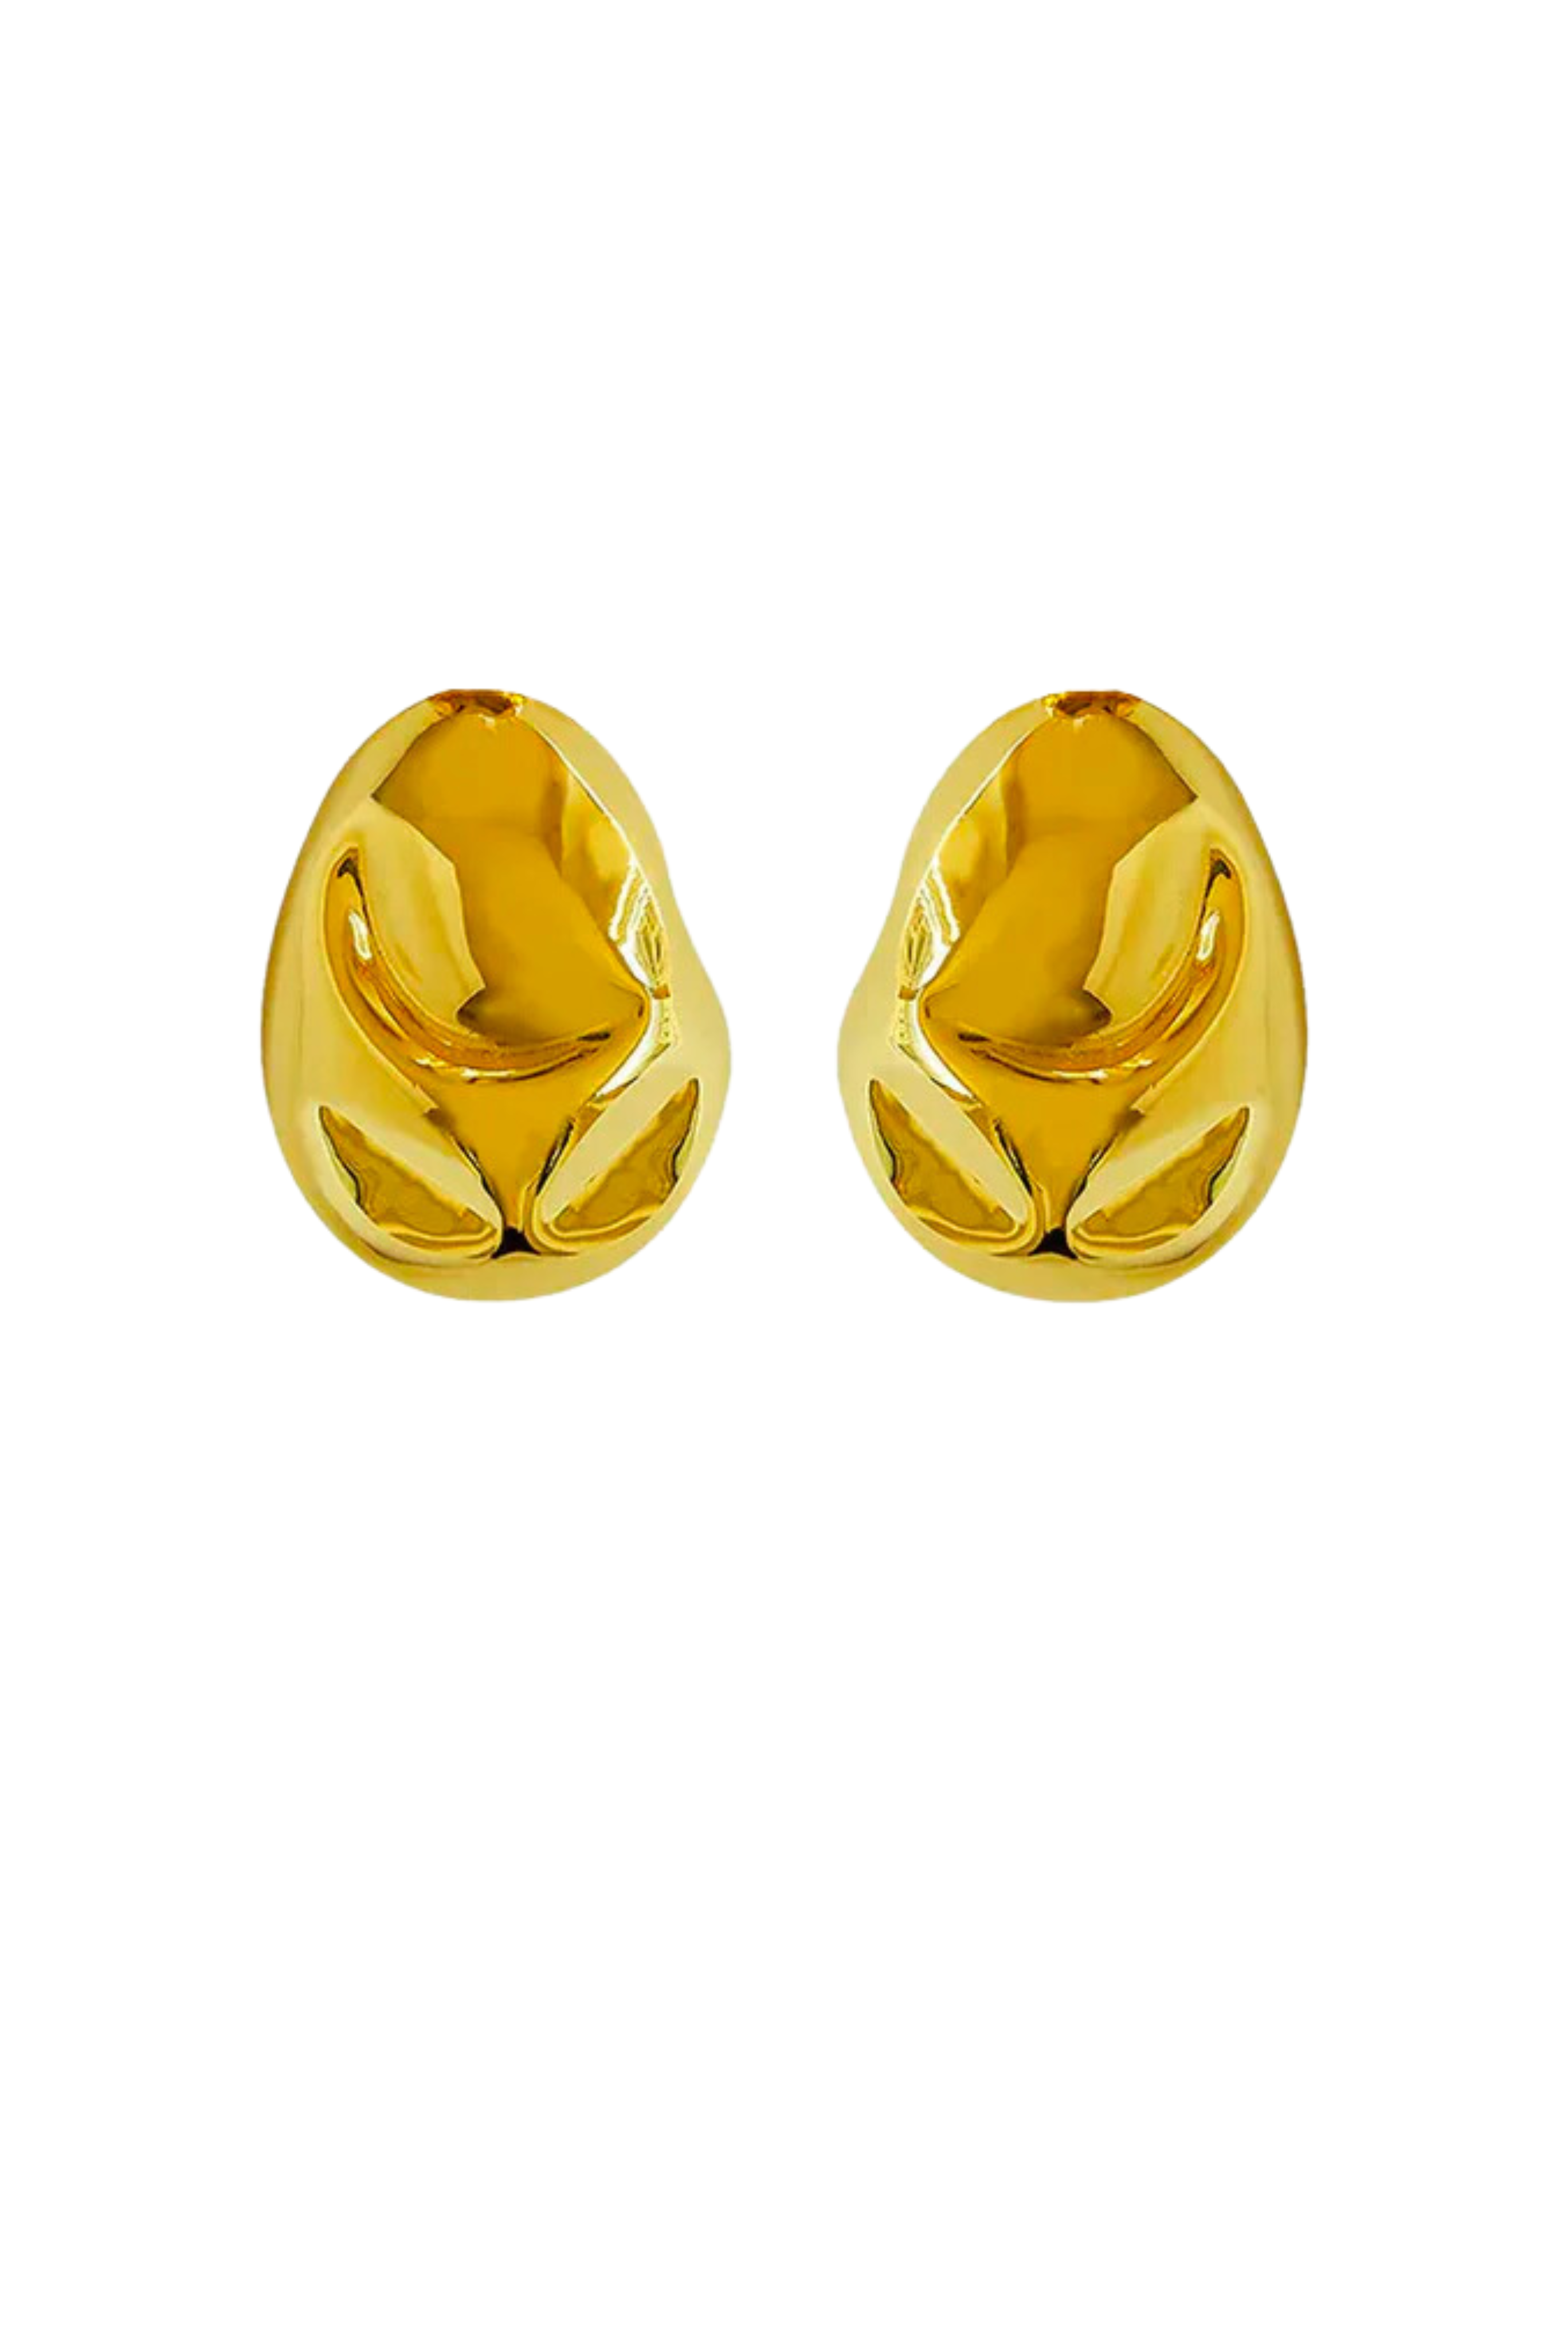 SORDO Cubagua Gold Earrings